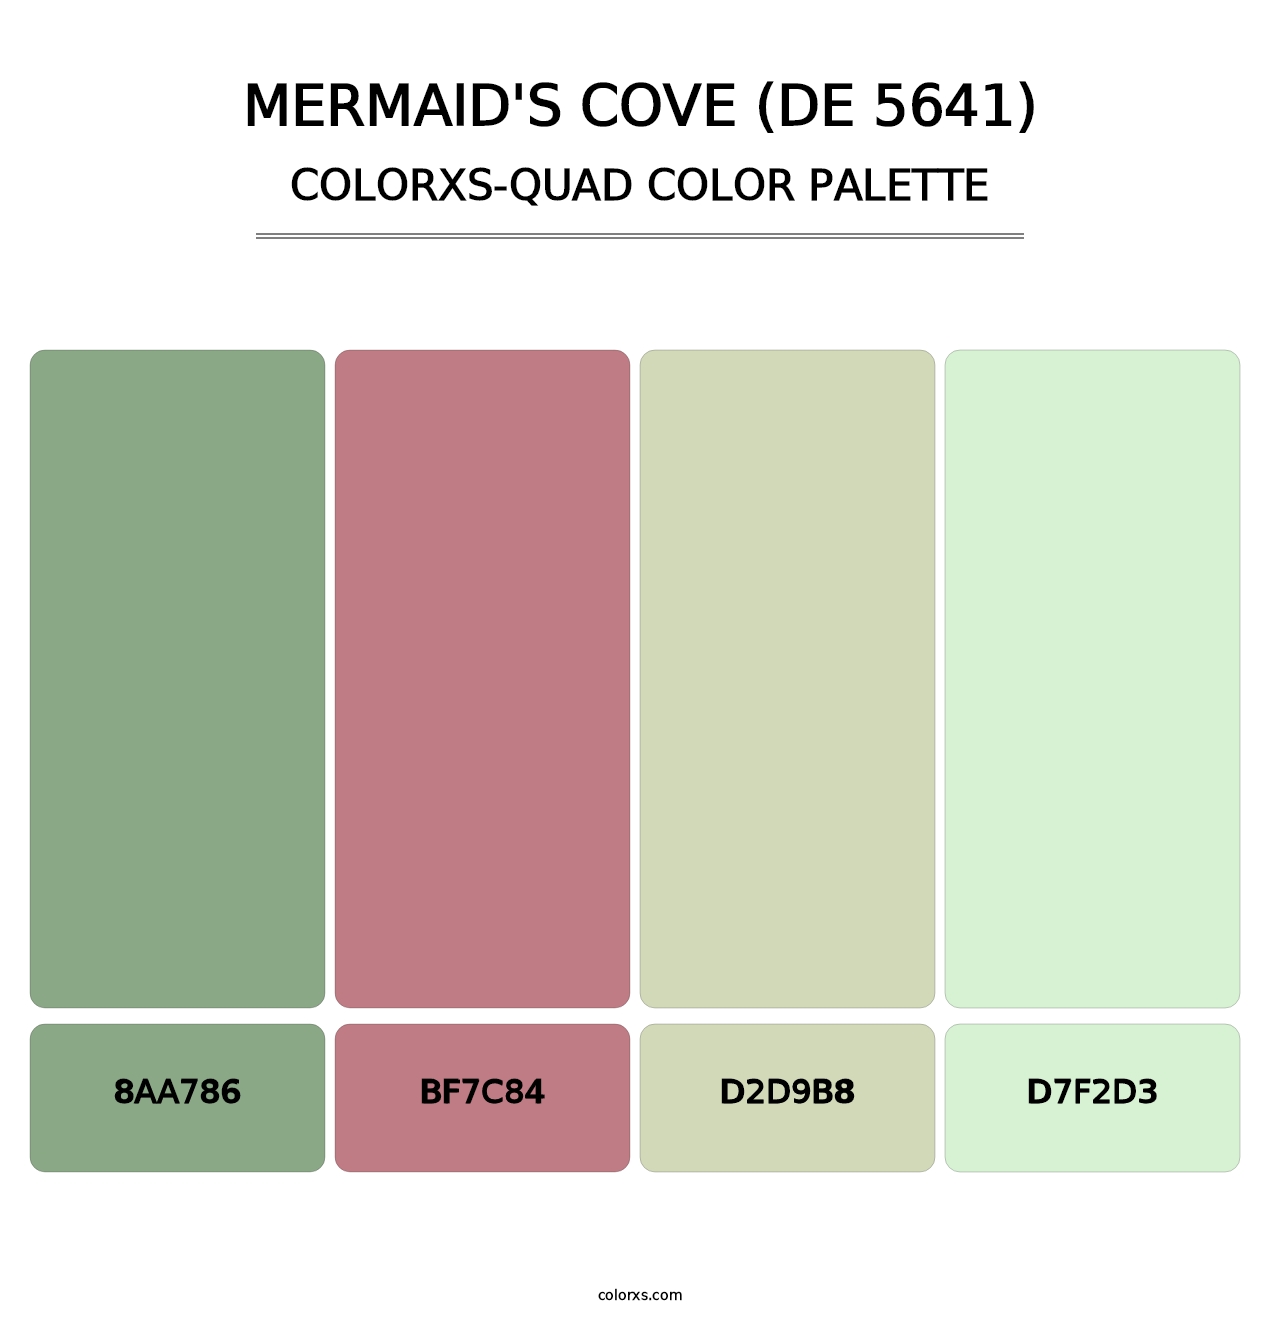 Mermaid's Cove (DE 5641) - Colorxs Quad Palette